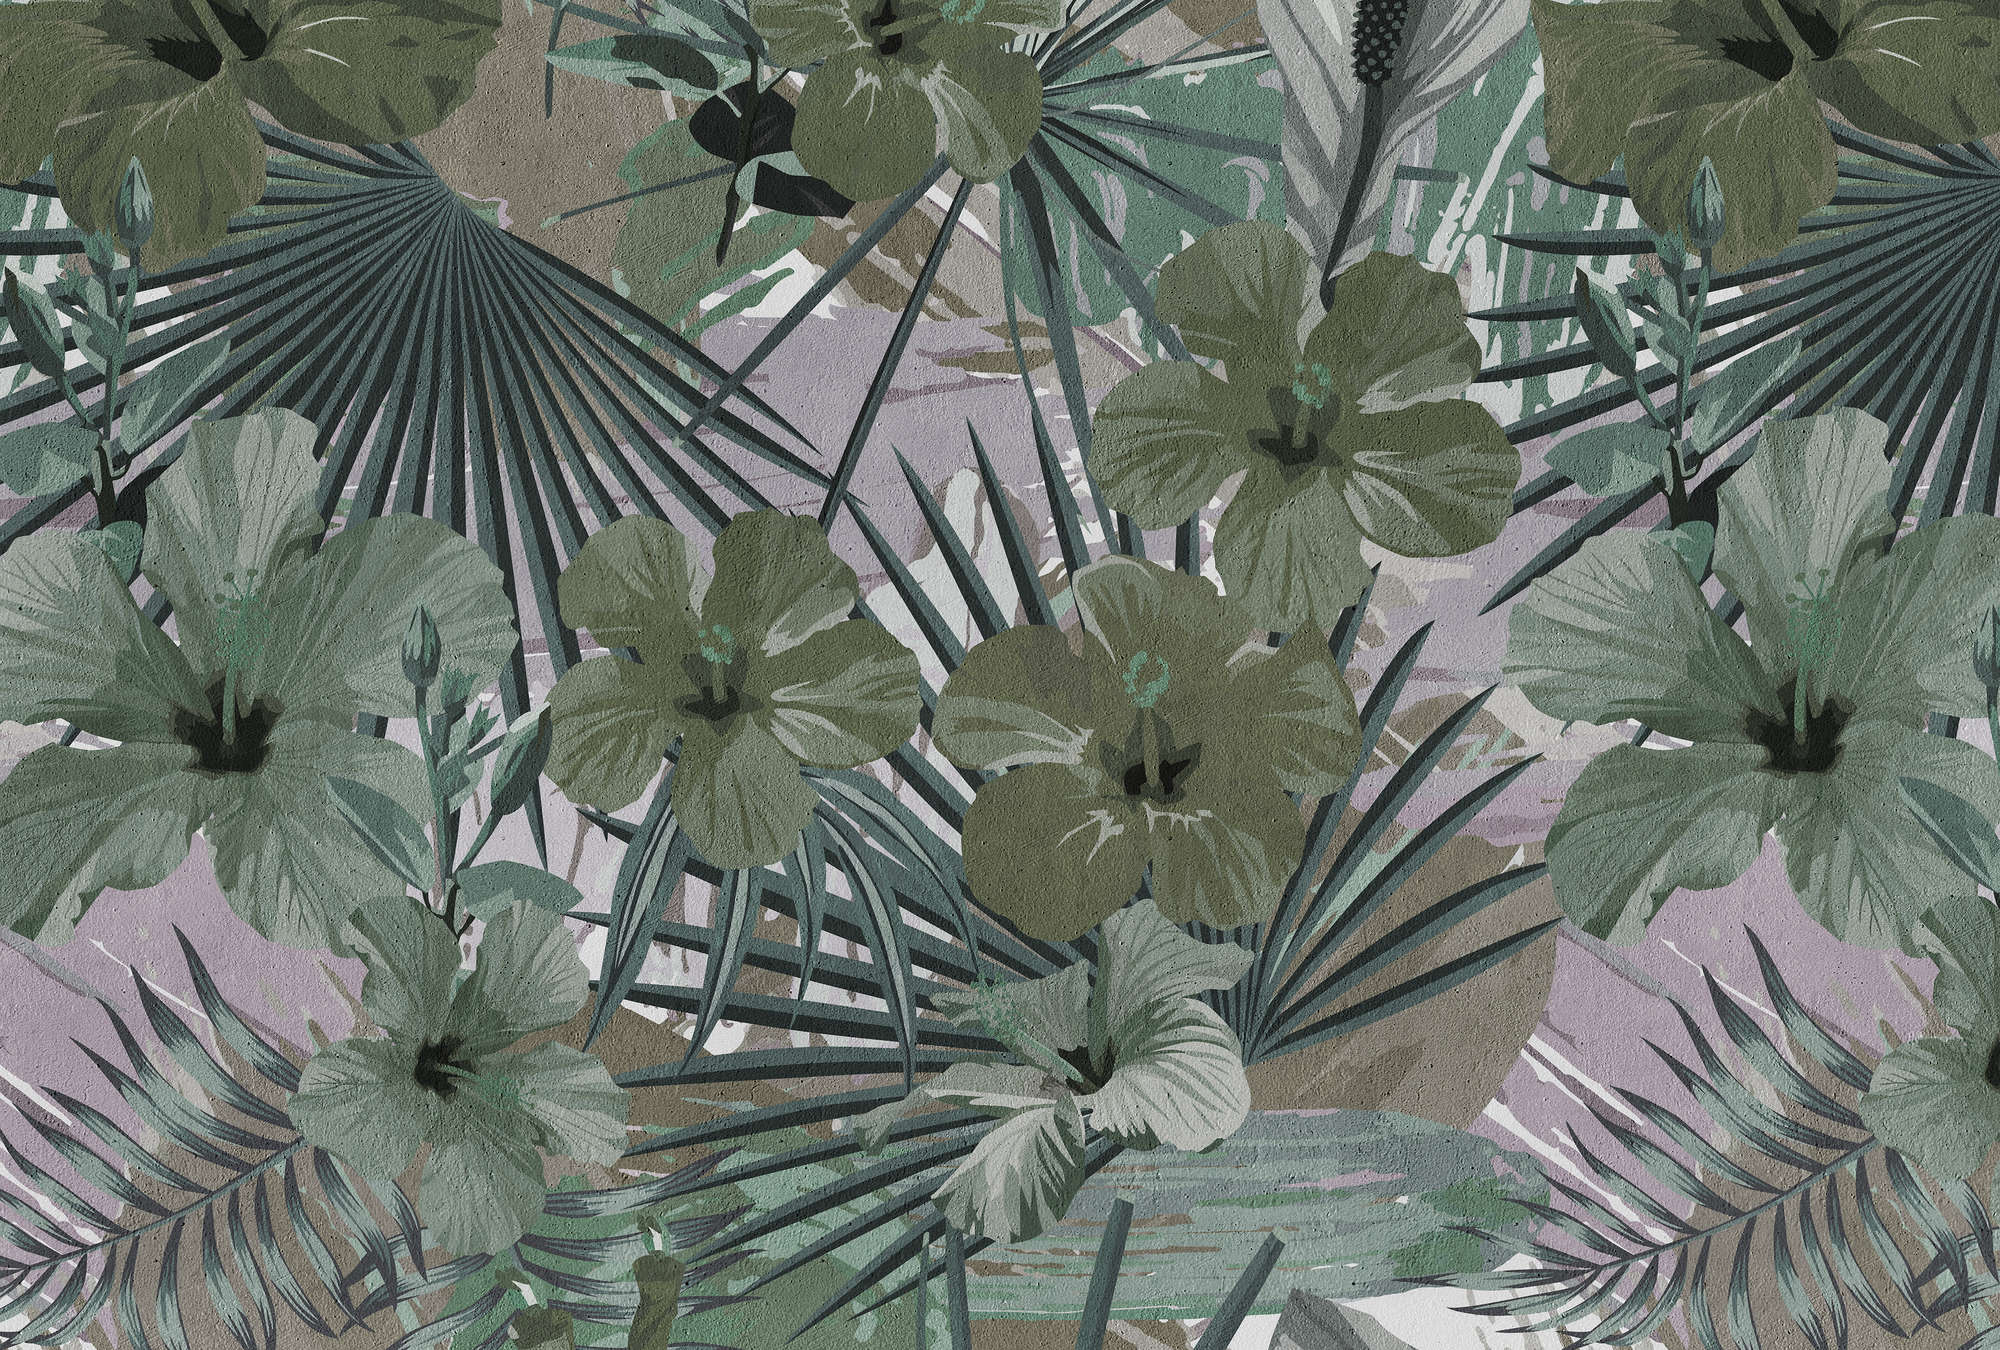             Papier peint jungle palmiers et fleurs - vert, gris
        